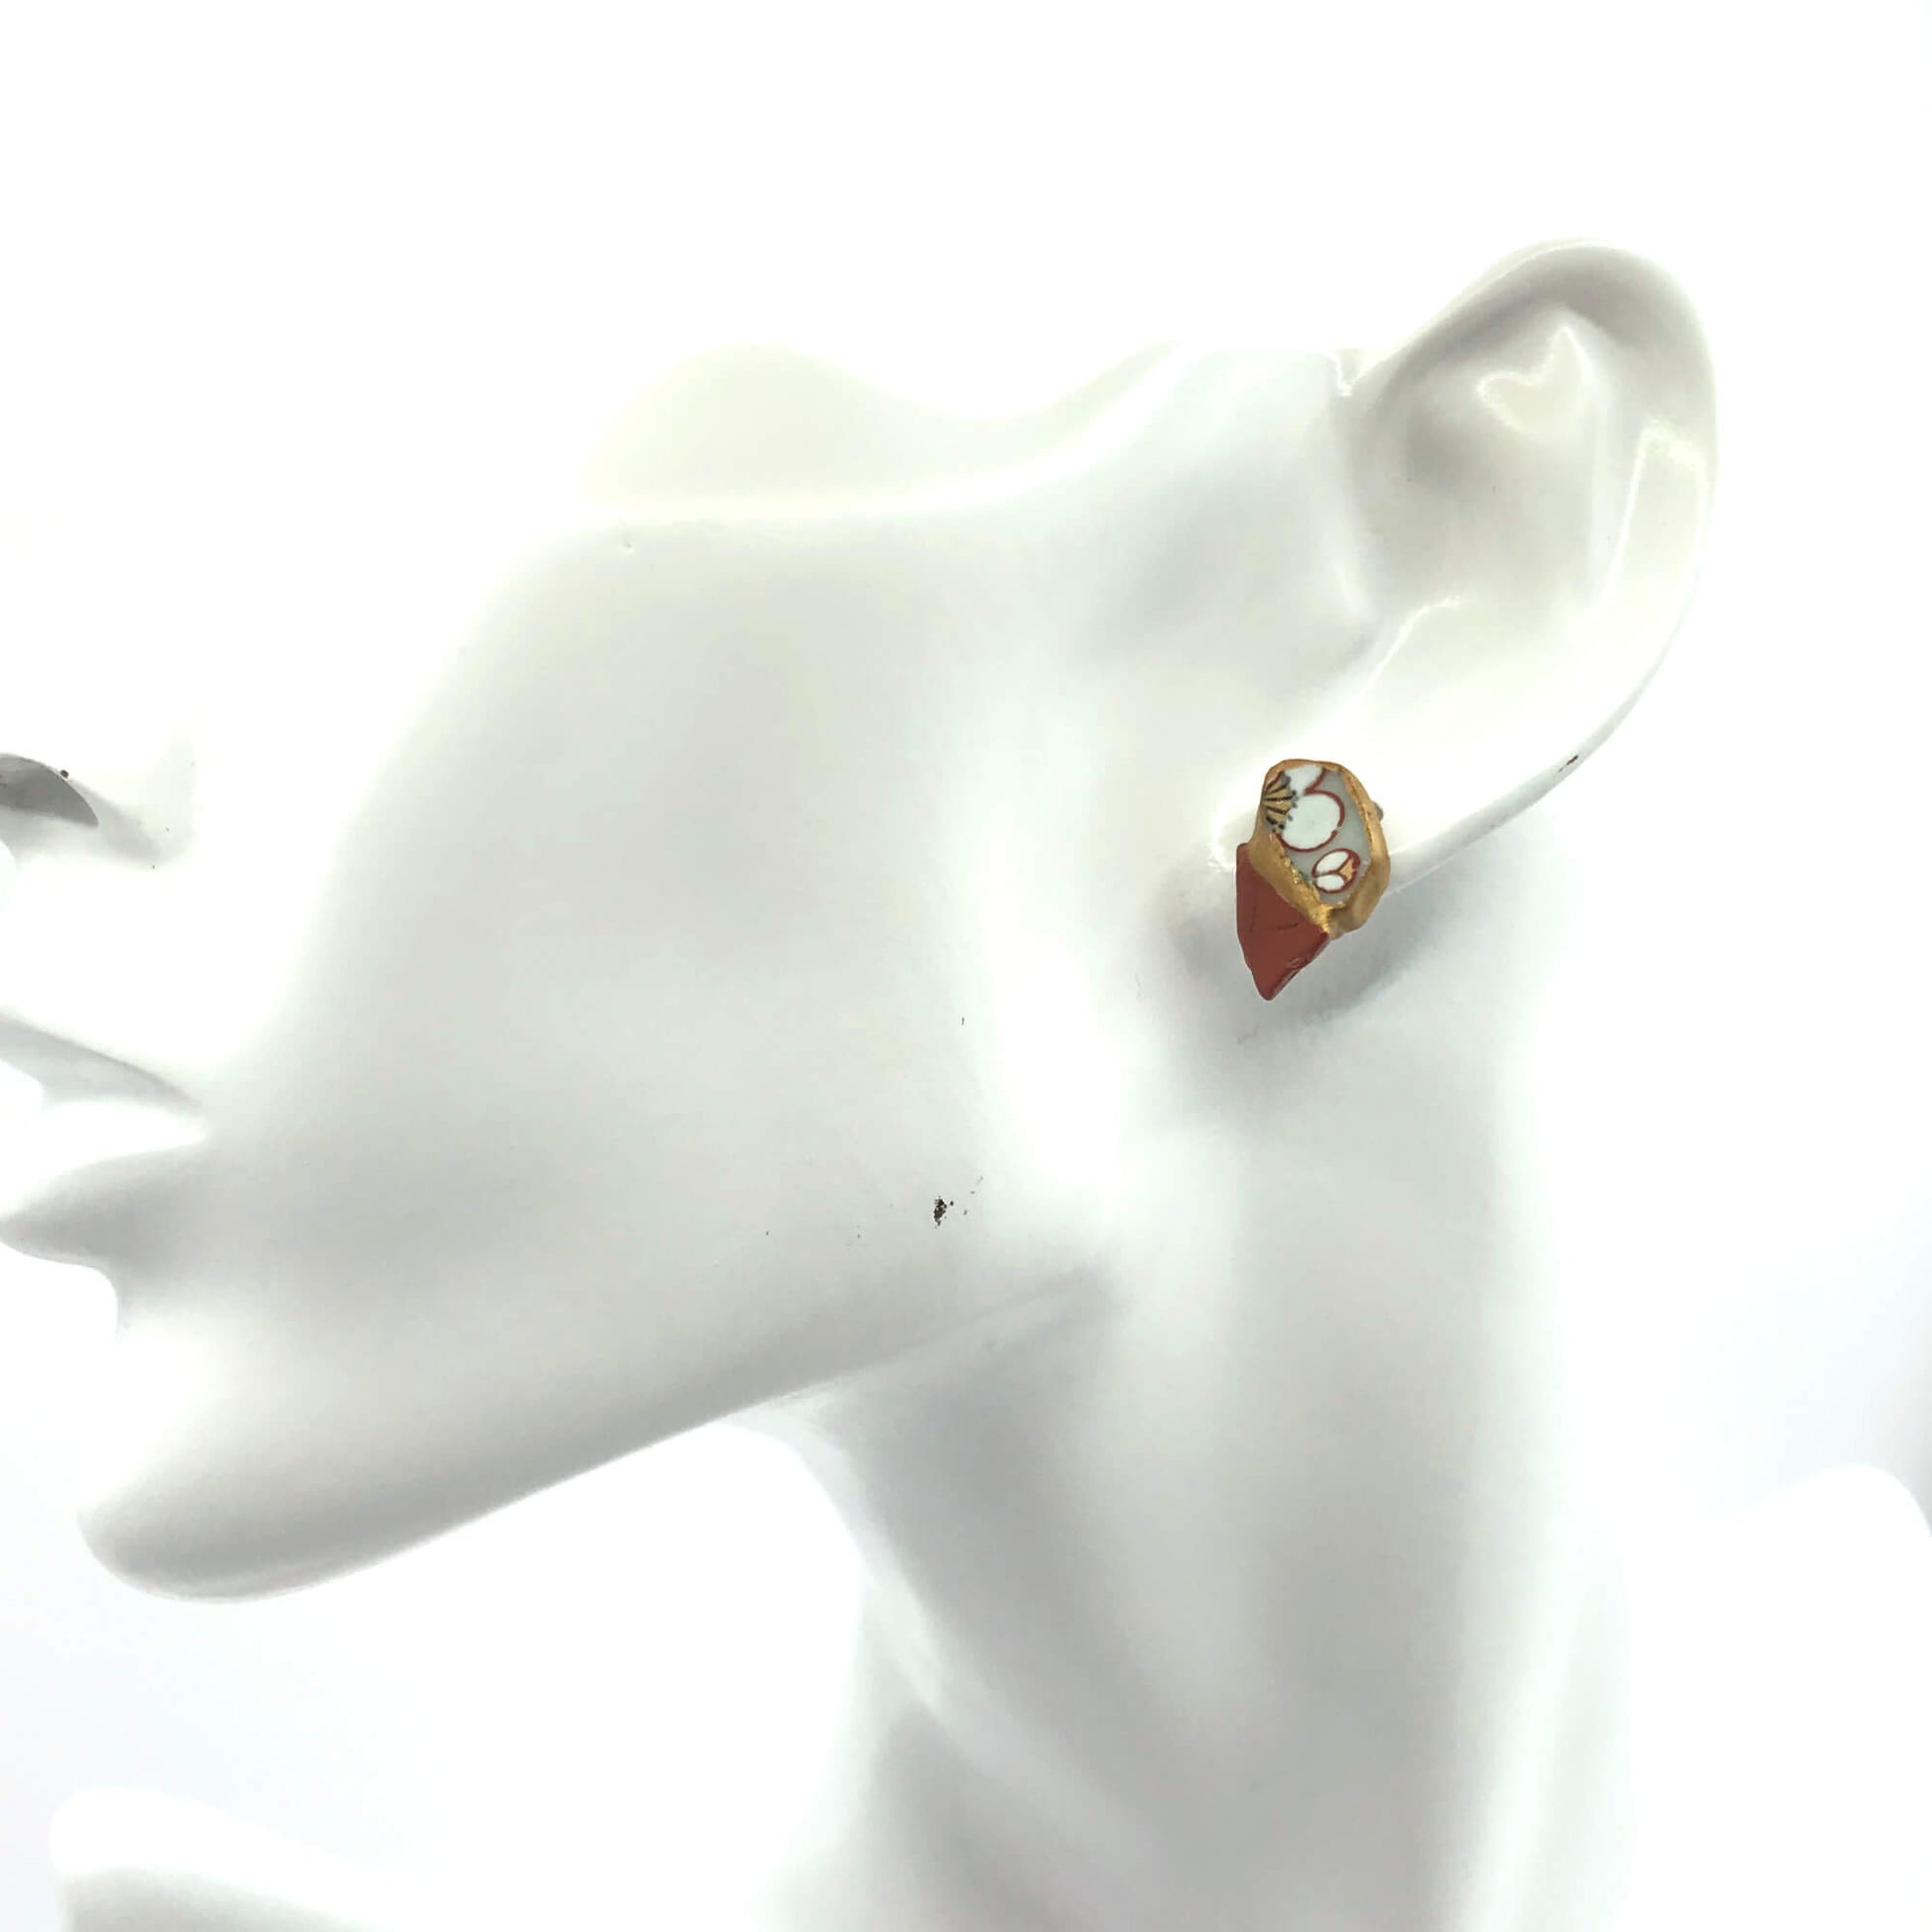 Red Jasper Stud Earrings-Kintsugi Stud Earrings-Japanese pottery jewelry-JAPONICA